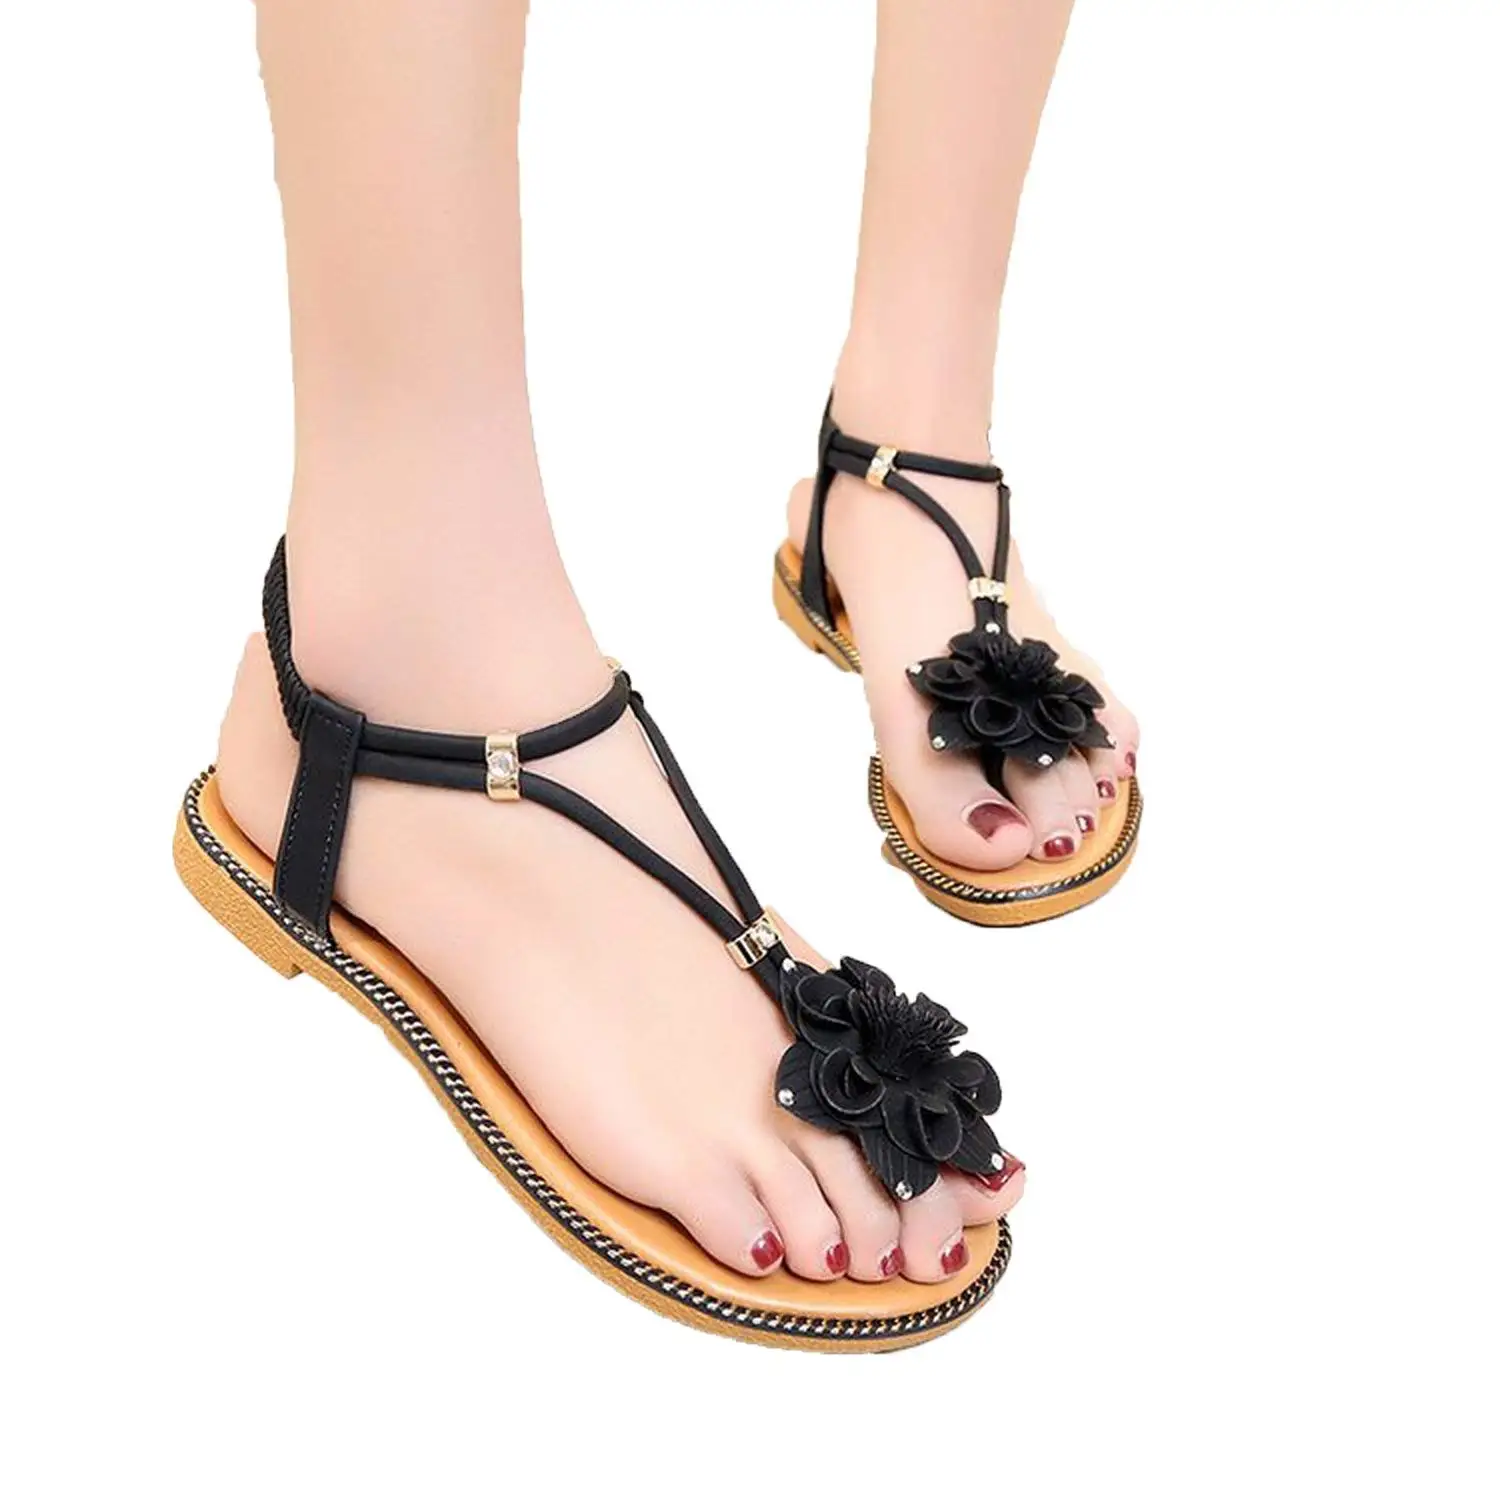 Buy Jl1150 summer female flower sandals swing shoes platform massage ...